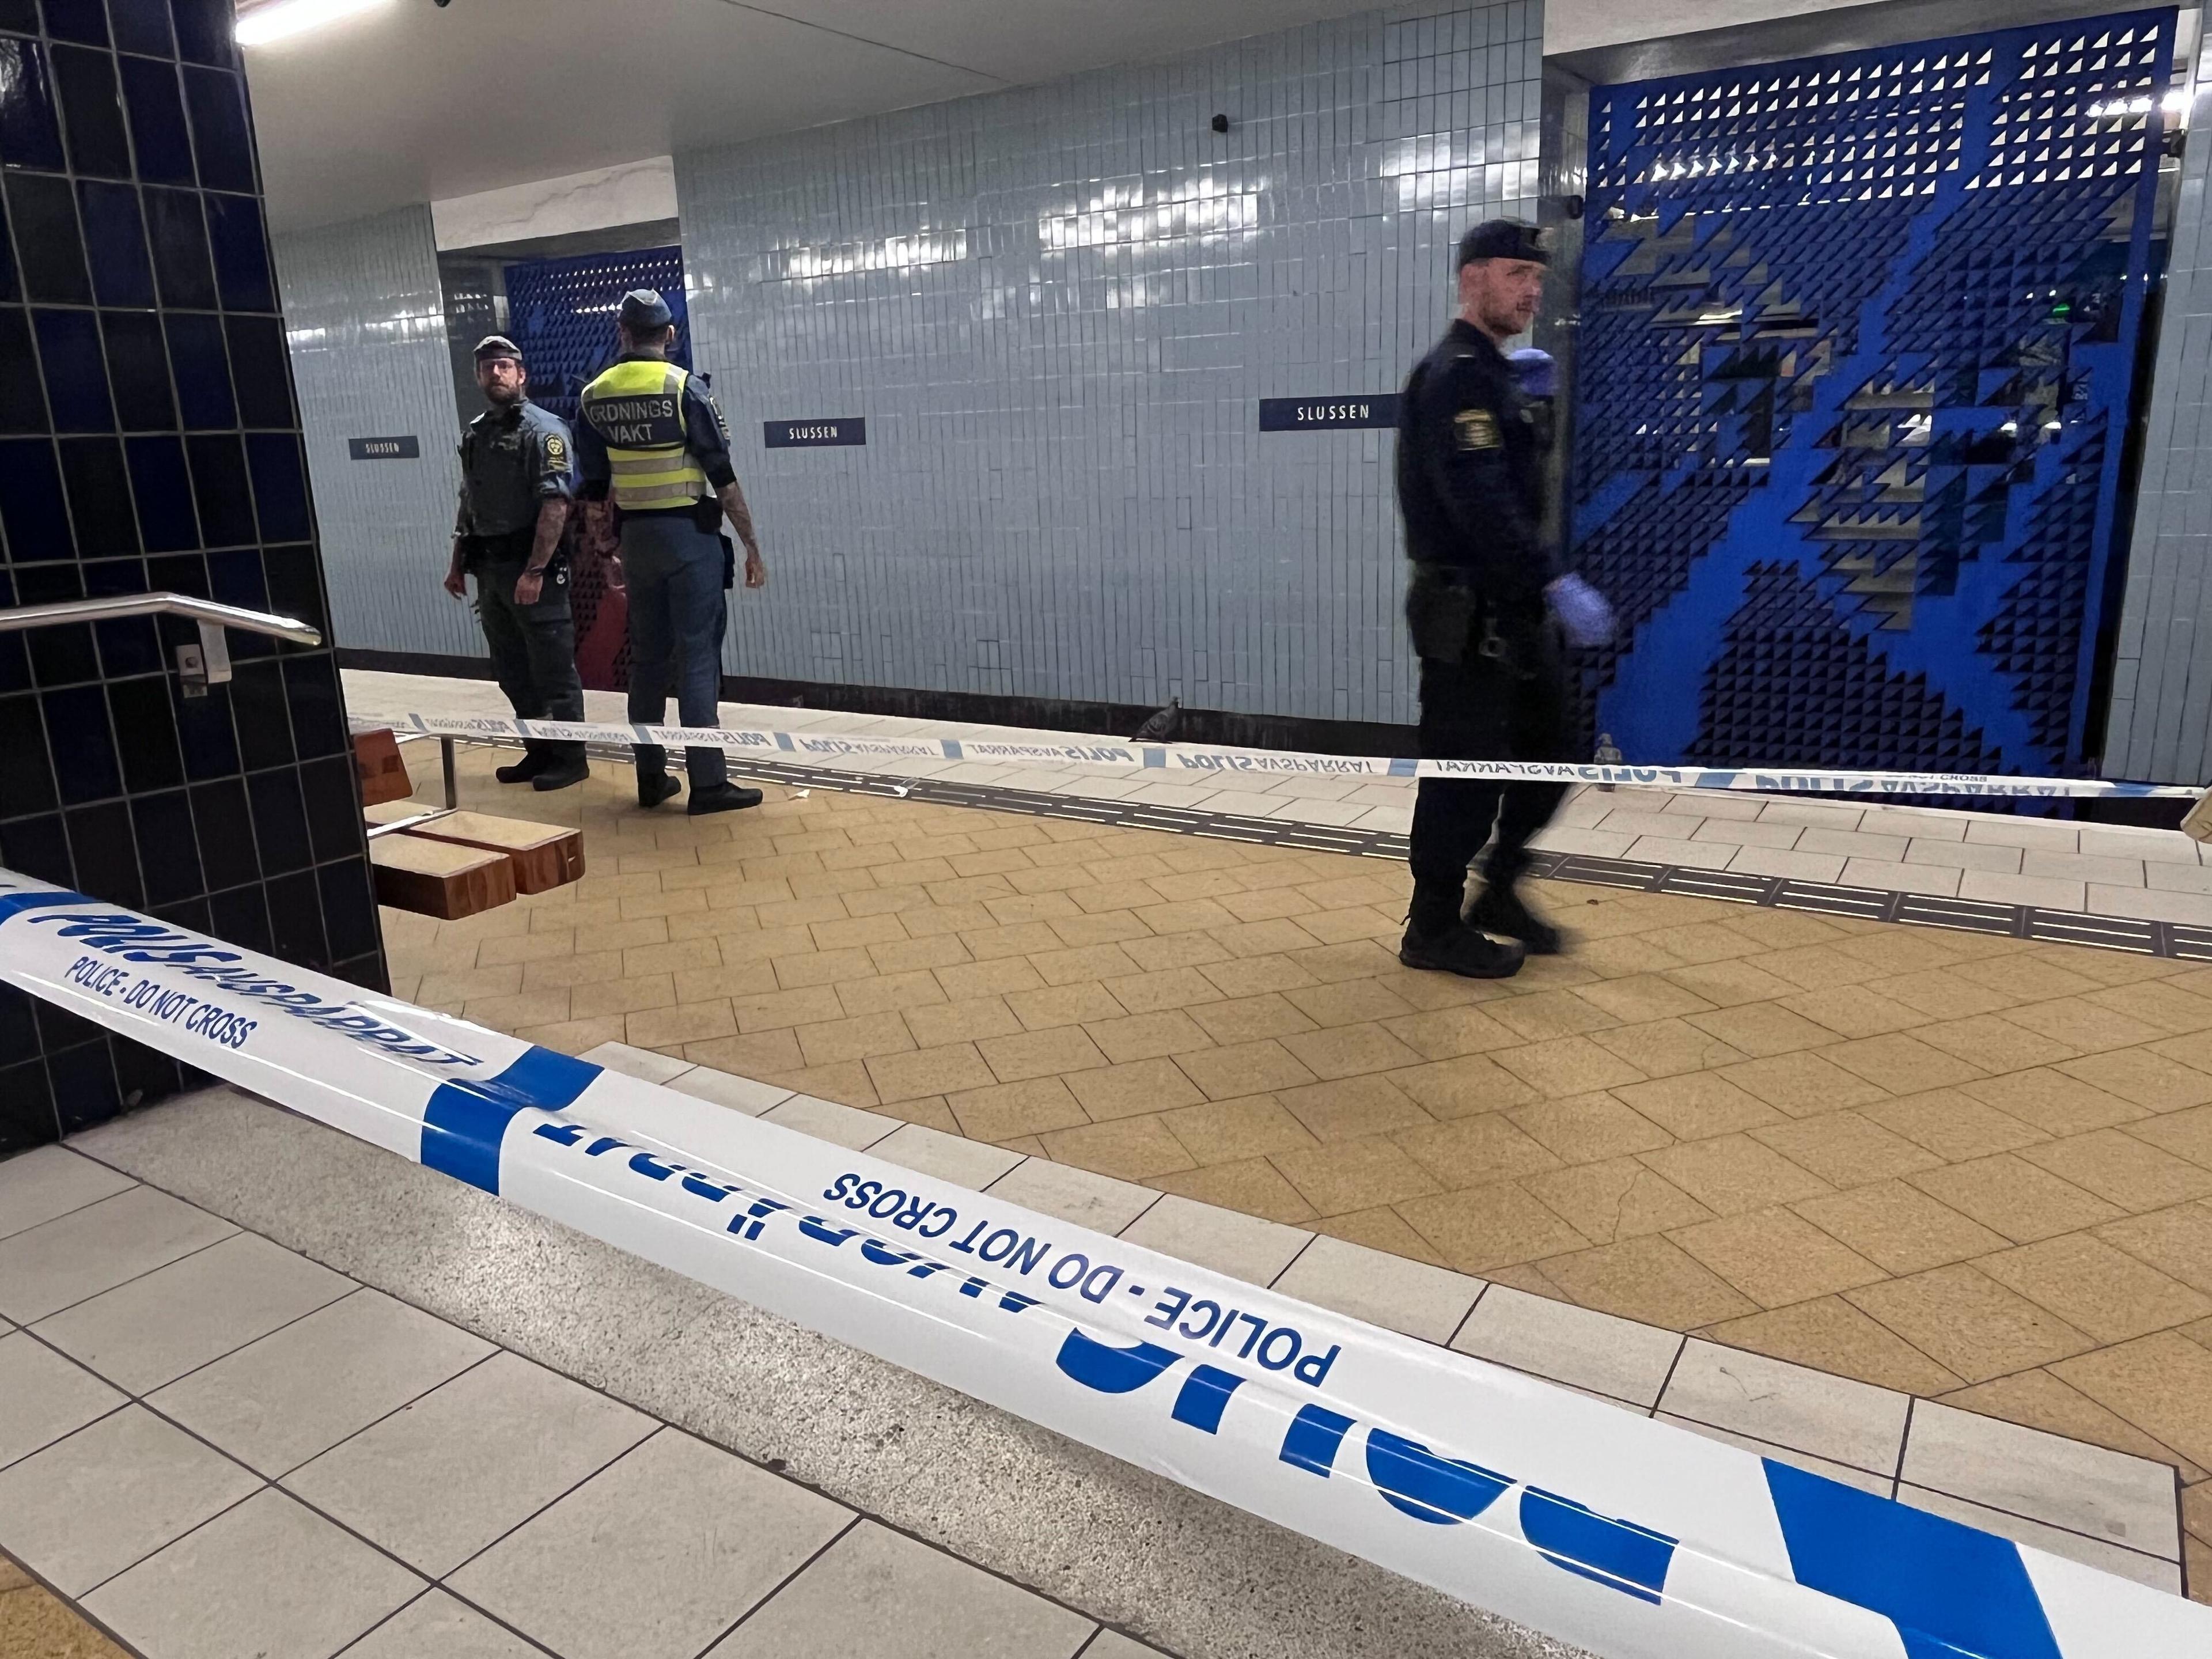 En person knivhöggs vid Slussens tunnelbanestation i Stockholm på tisdagen. Personen är förd till sjukhus och skadeläget är oklart. Foto: Johan Jeppsson/TT